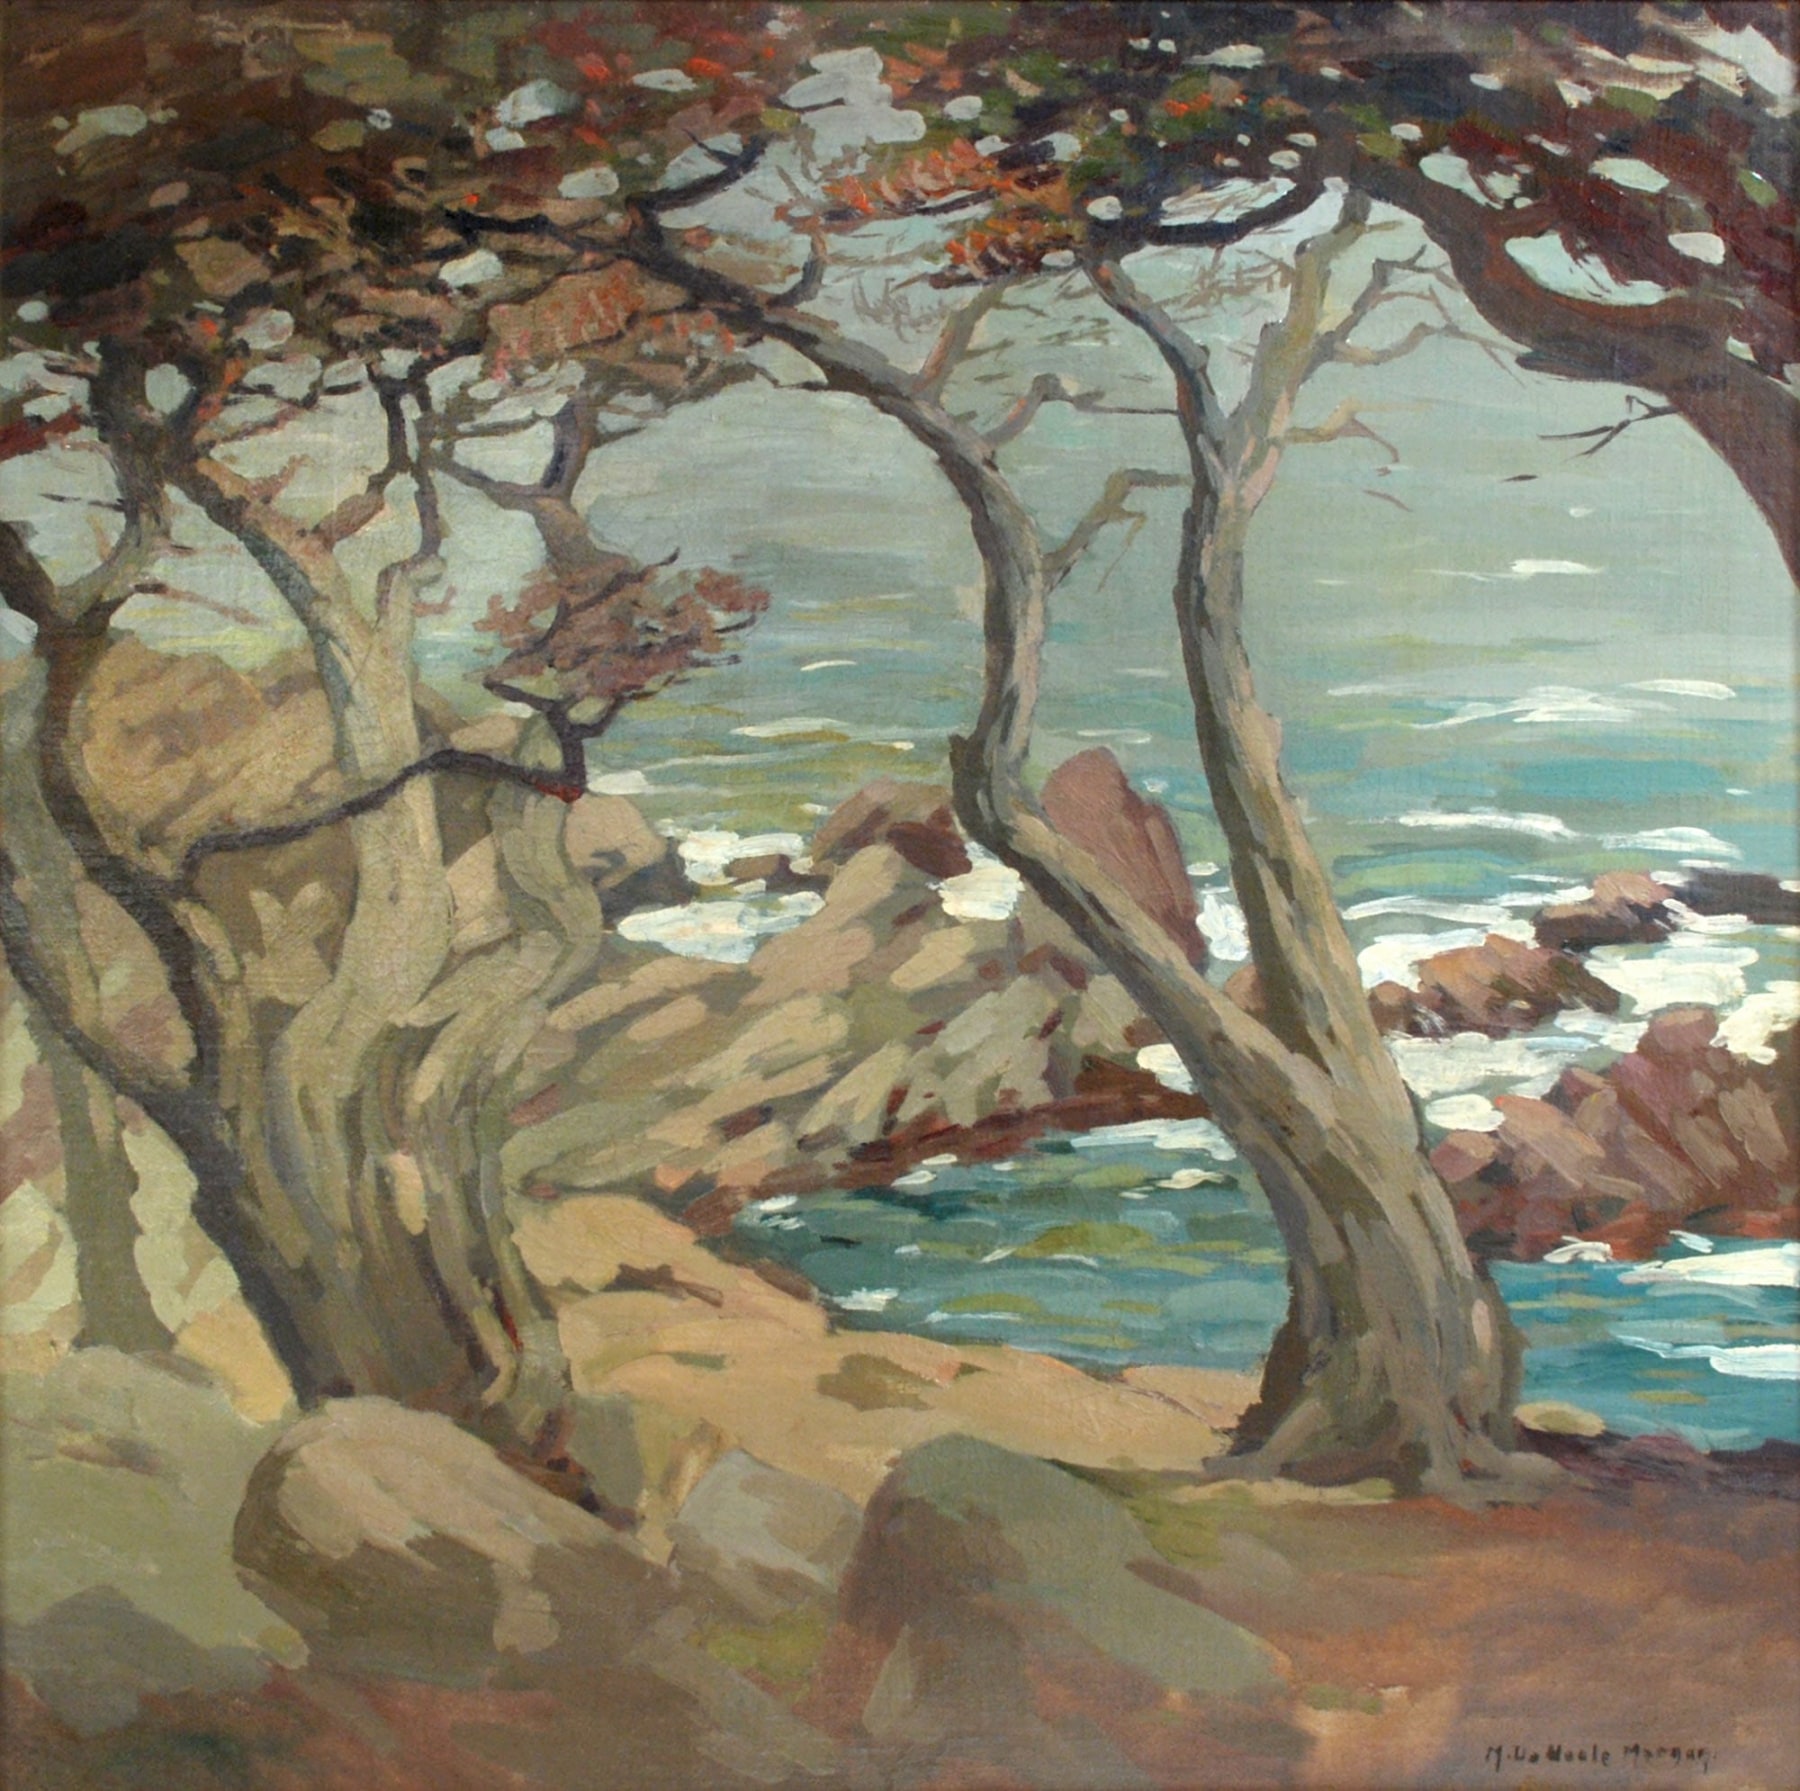 MARY DENEALE MORGAN (1868-1948), Windy Day at Dusk